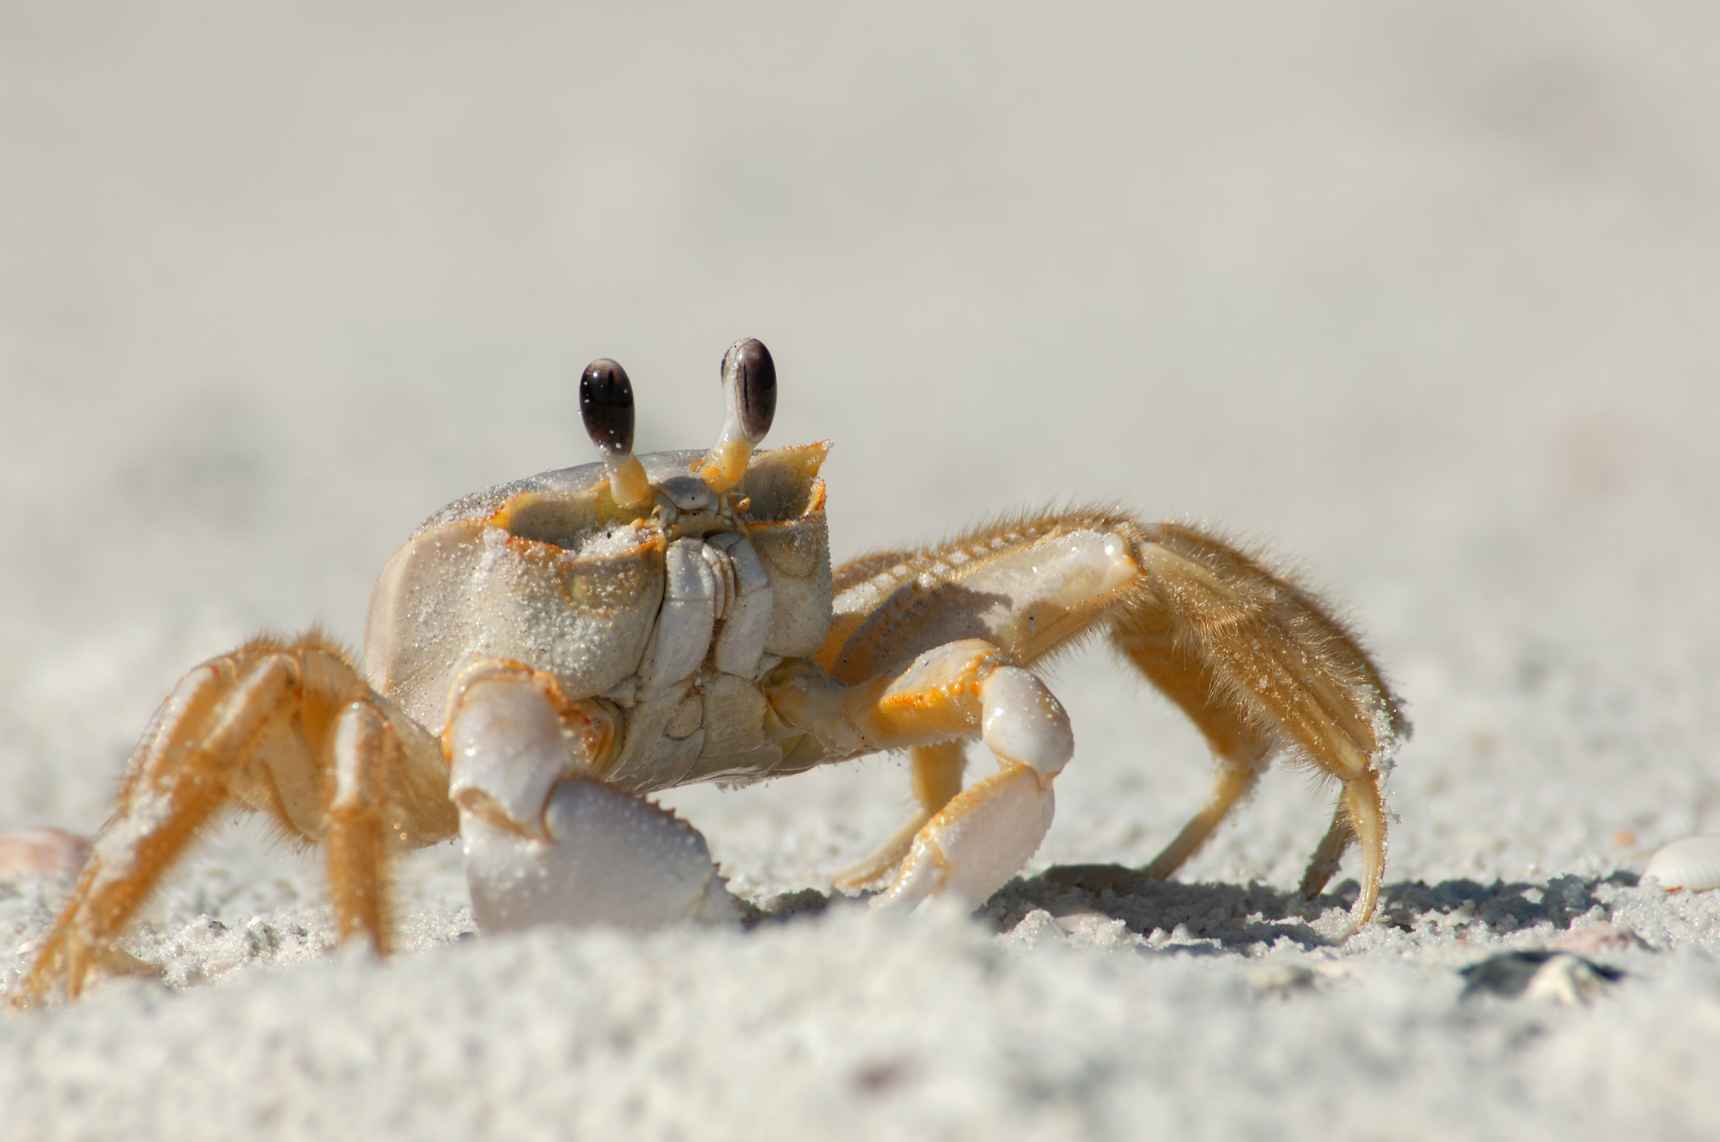 A semi terrestrial ghost crab on beach.